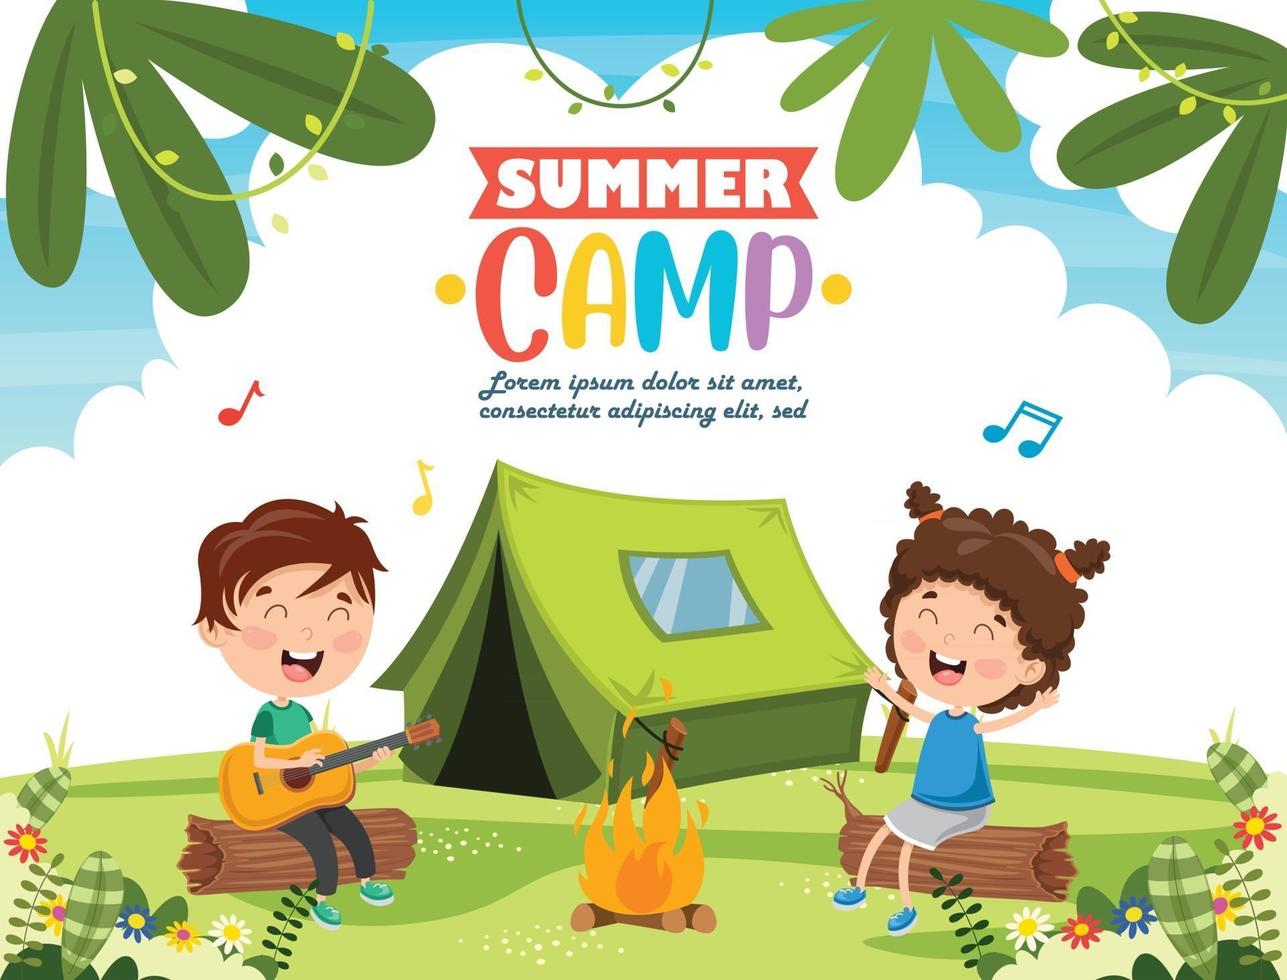 crianças engraçadas no acampamento de verão vetor